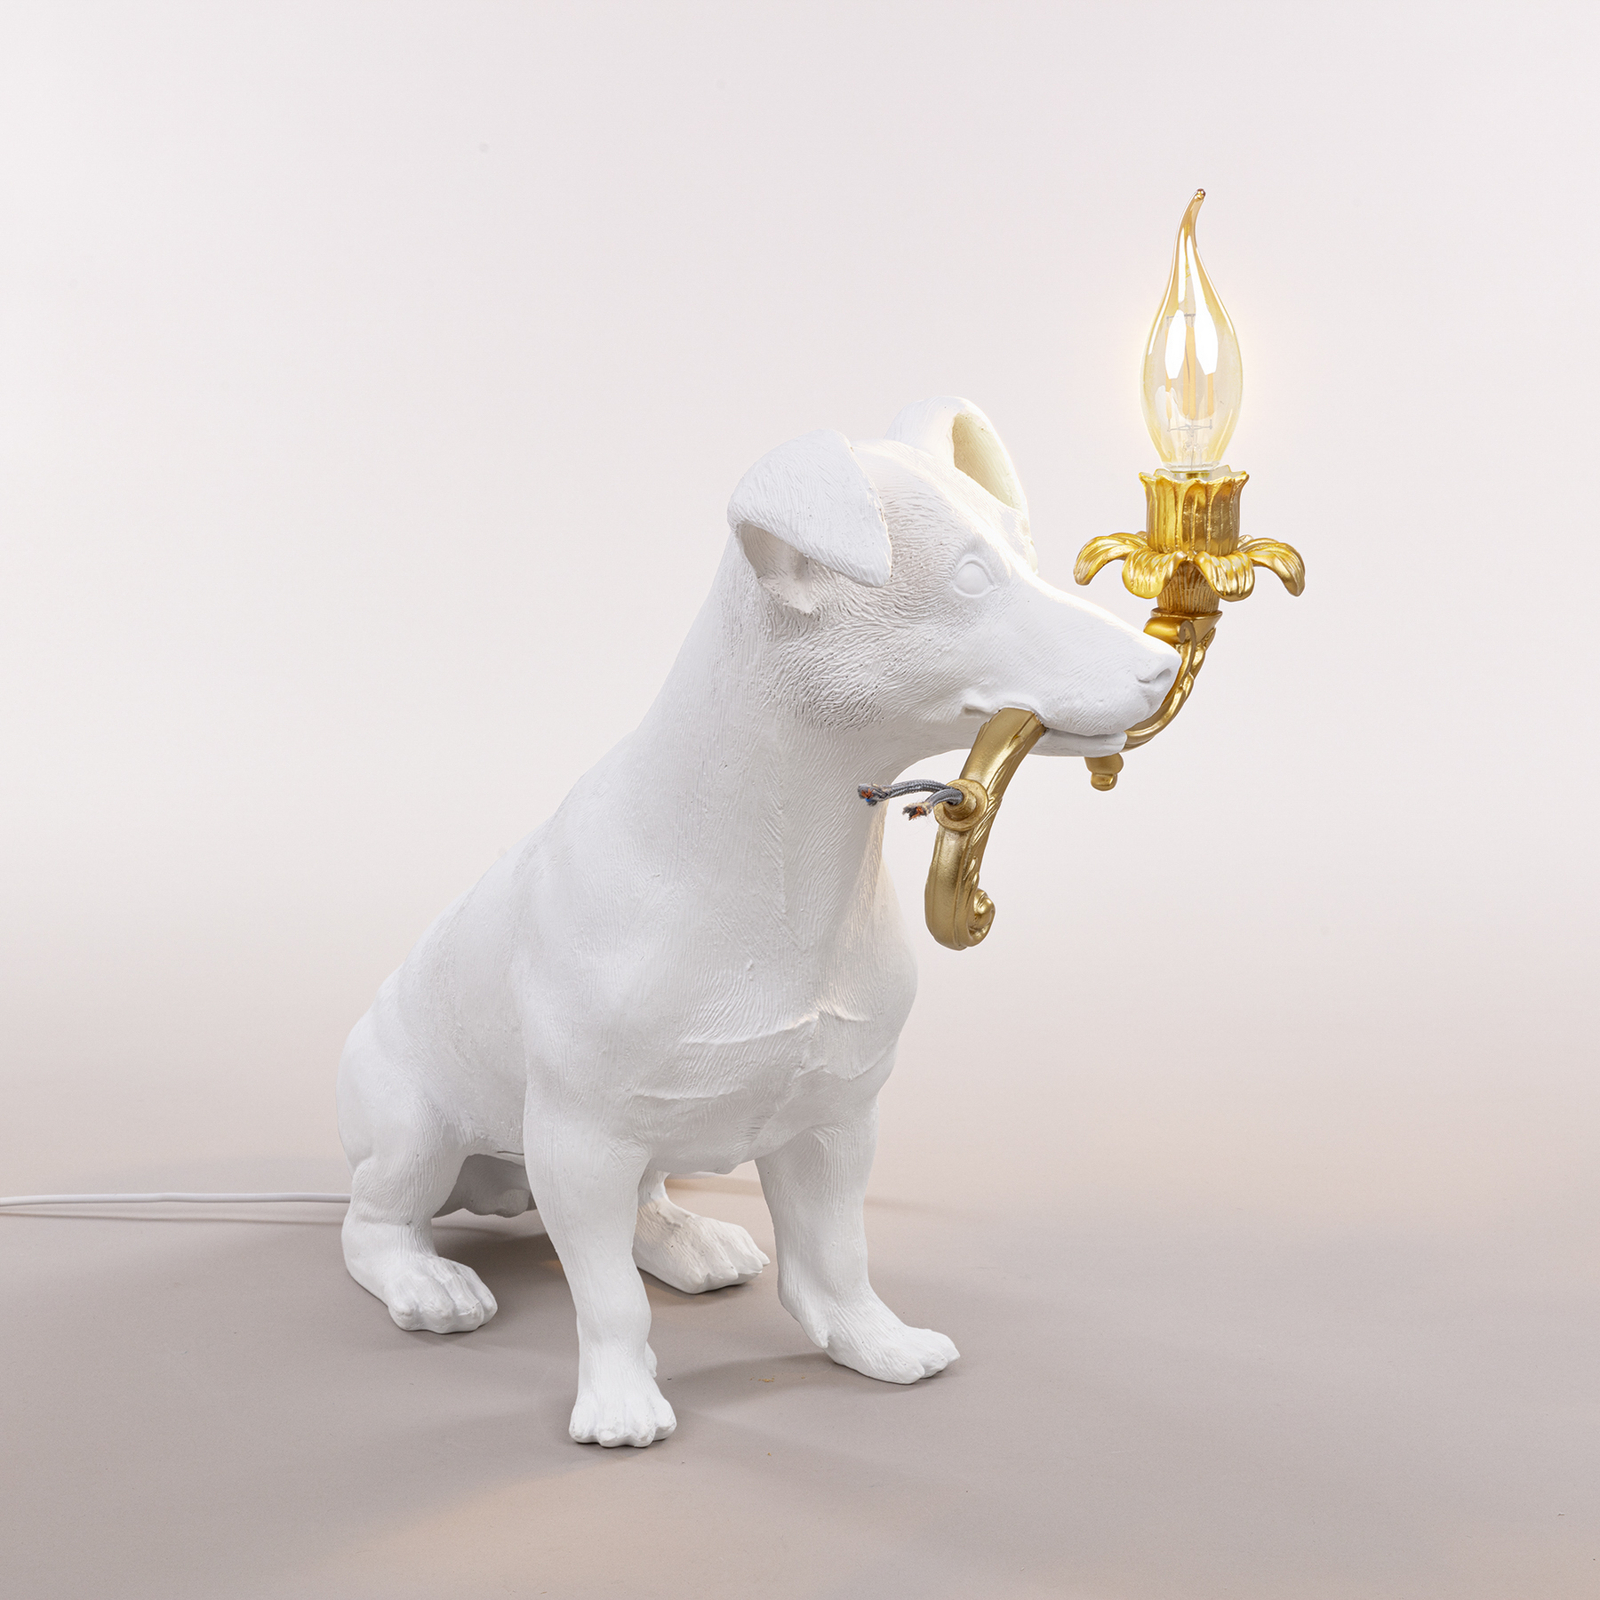 Stolová LED lampa Rio, pes v bielej